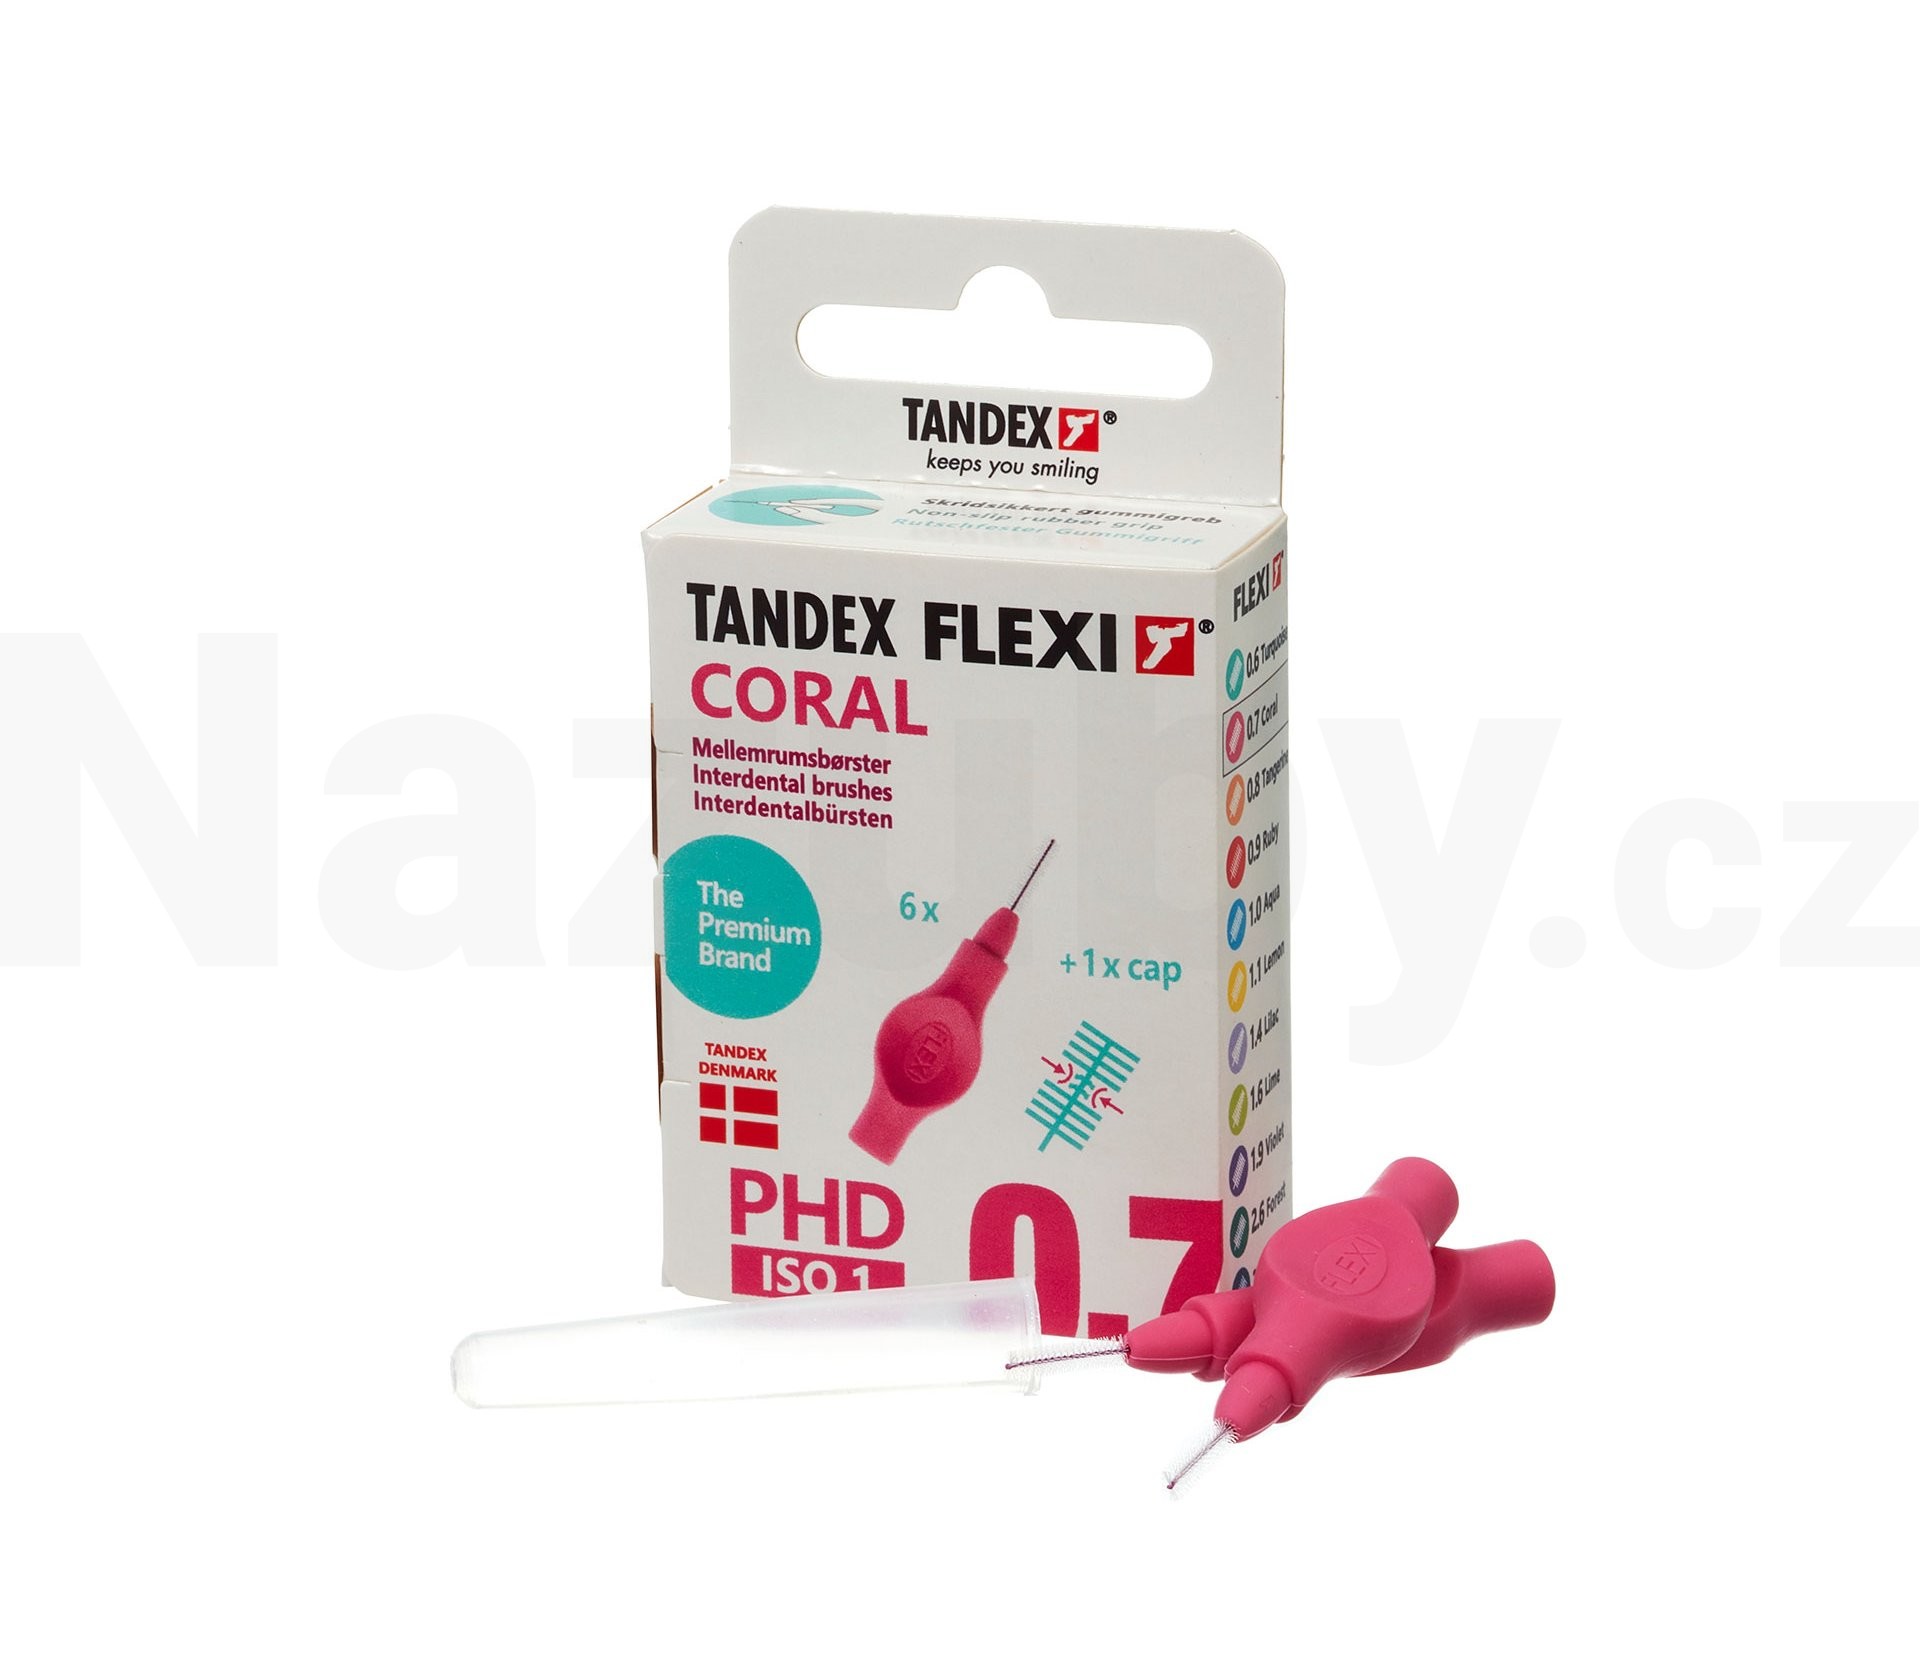 Tandex Flexi 0,7 Coral mezizubní kartáček 6 ks